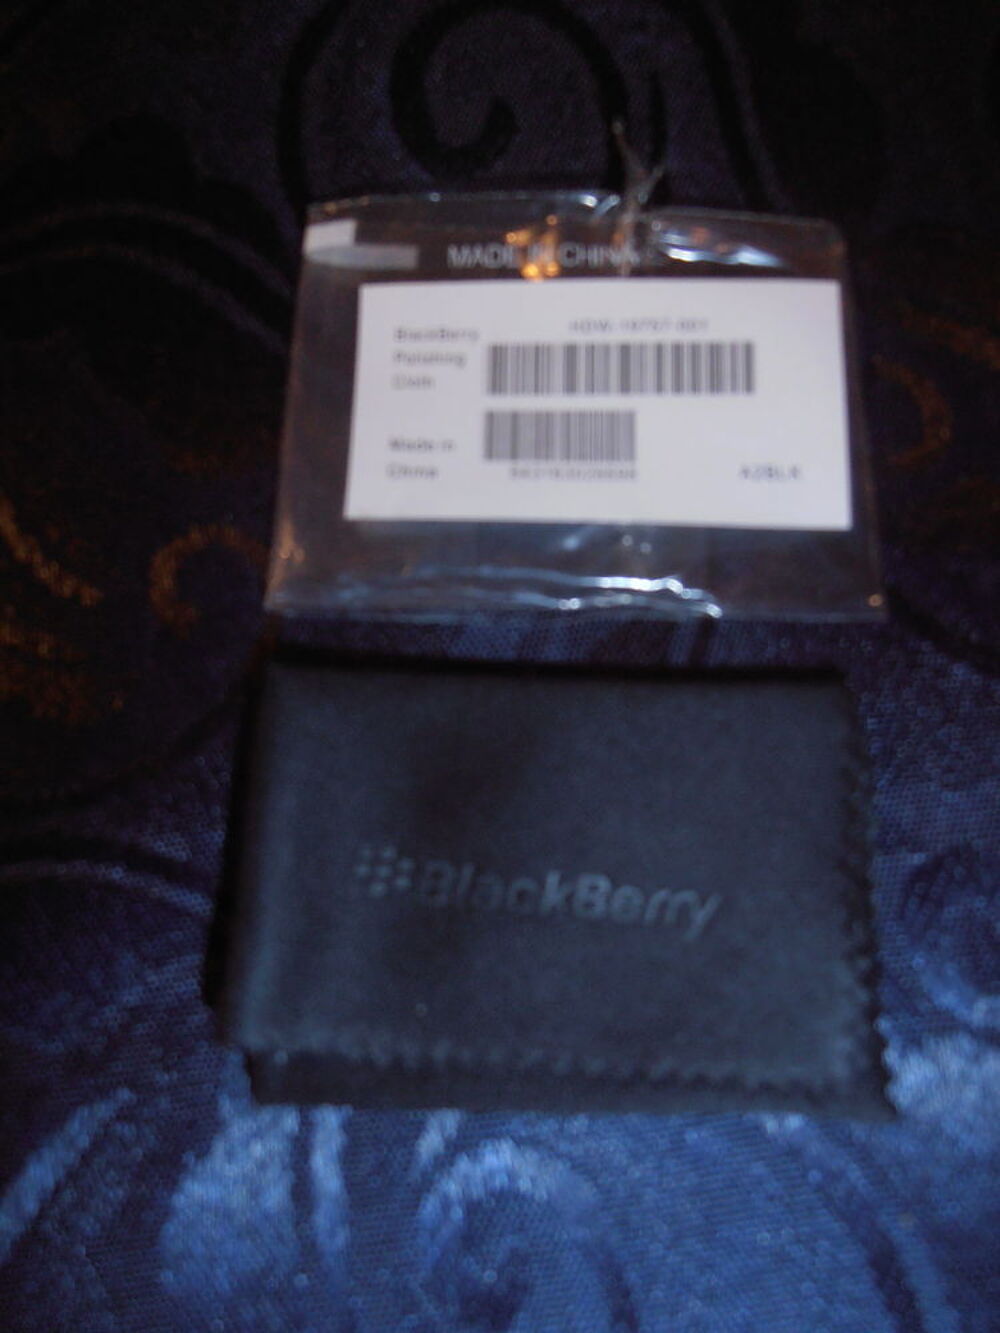 Chiffon microfibre BlackBerry (26) Tlphones et tablettes